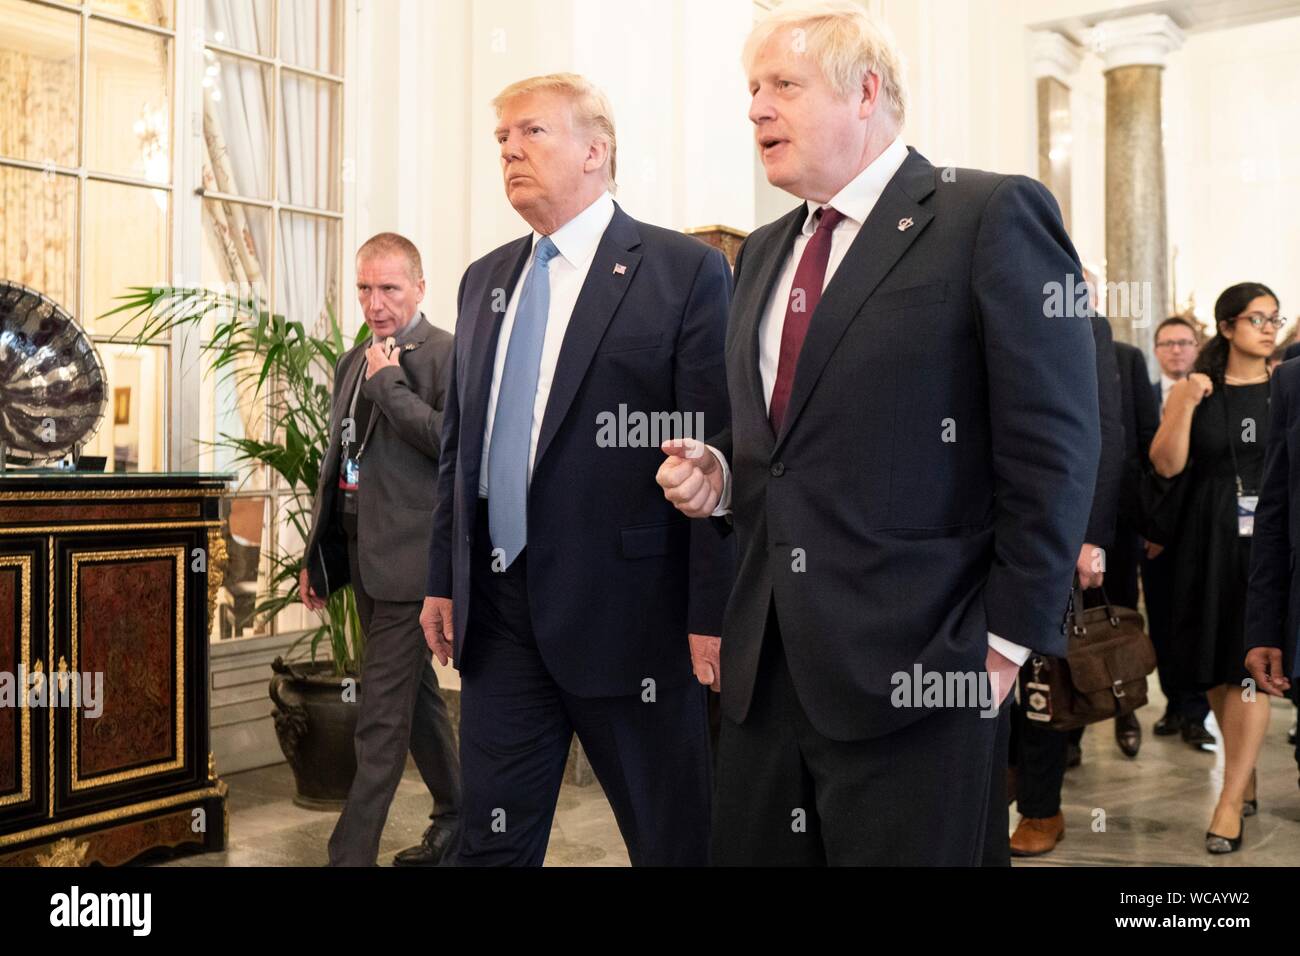 El Presidente de Estados Unidos, Donald Trump, a la izquierda, camina con el Primer Ministro británico, Boris Johnson tras su reunión al margen de la Cumbre del G7 en el Hotel du Palais Biarritz el 25 de agosto de 2019 en Biarritz, Francia. Foto de stock